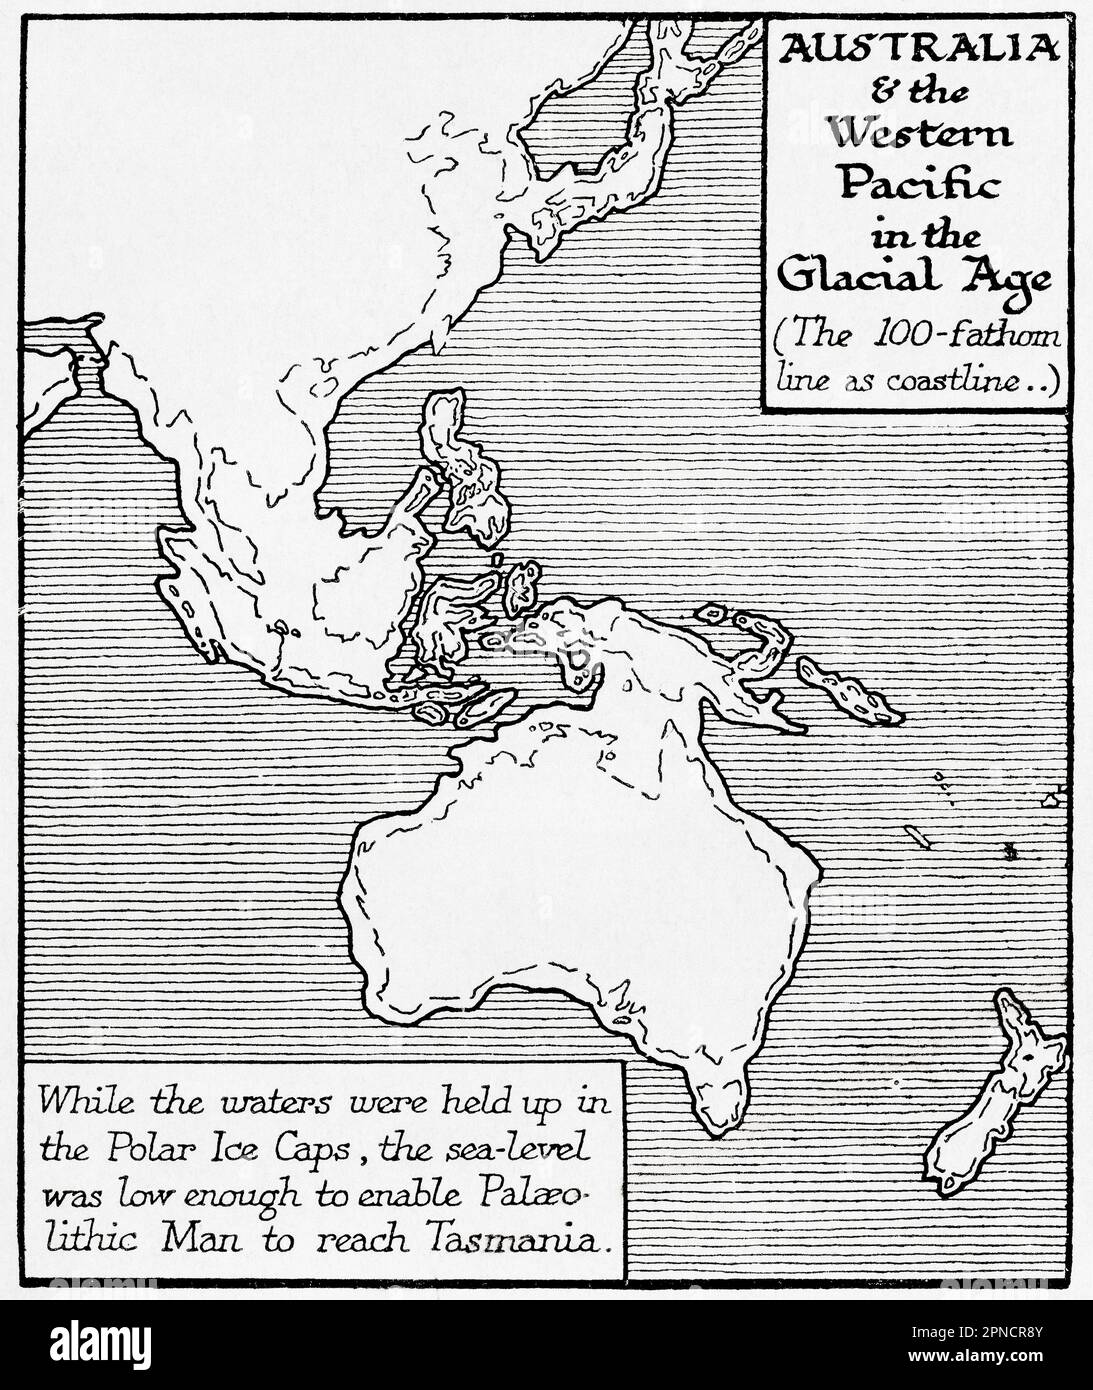 Karte von Australien und dem westlichen Pazifik in der Gletscherzeit. Während das Wasser in den Polar Ice Caps gehalten wurde, war der Meeresspiegel niedrig genug, um es dem Paläolithiker zu ermöglichen, Tasmanien zu erreichen. Aus dem Buch Outline of History von H.G. Wells, veröffentlicht 1920. Stockfoto